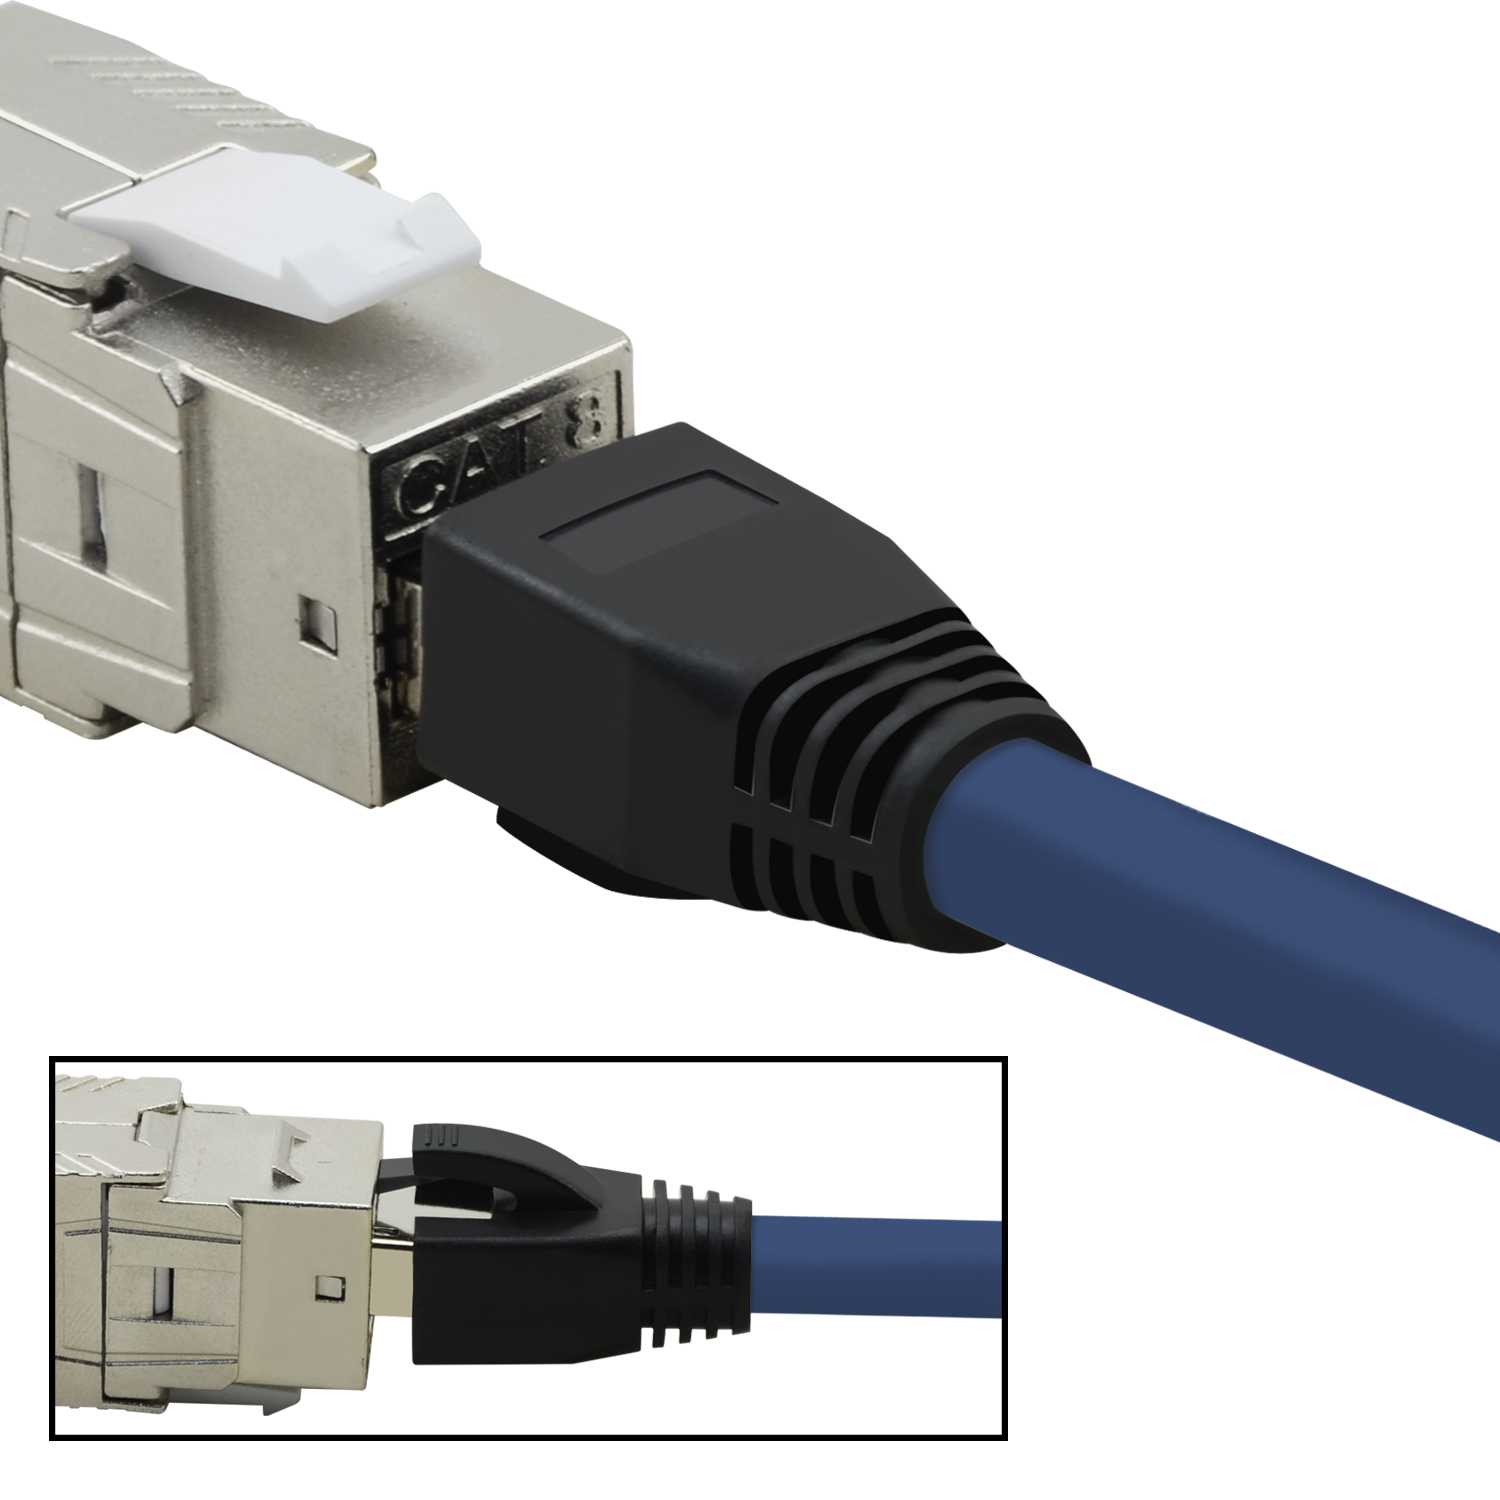 GBit, blau, 5er 1,5m / S/FTP m Netzwerkkabel TPFNET 40 Netzwerkkabel, Patchkabel 1,5 Pack